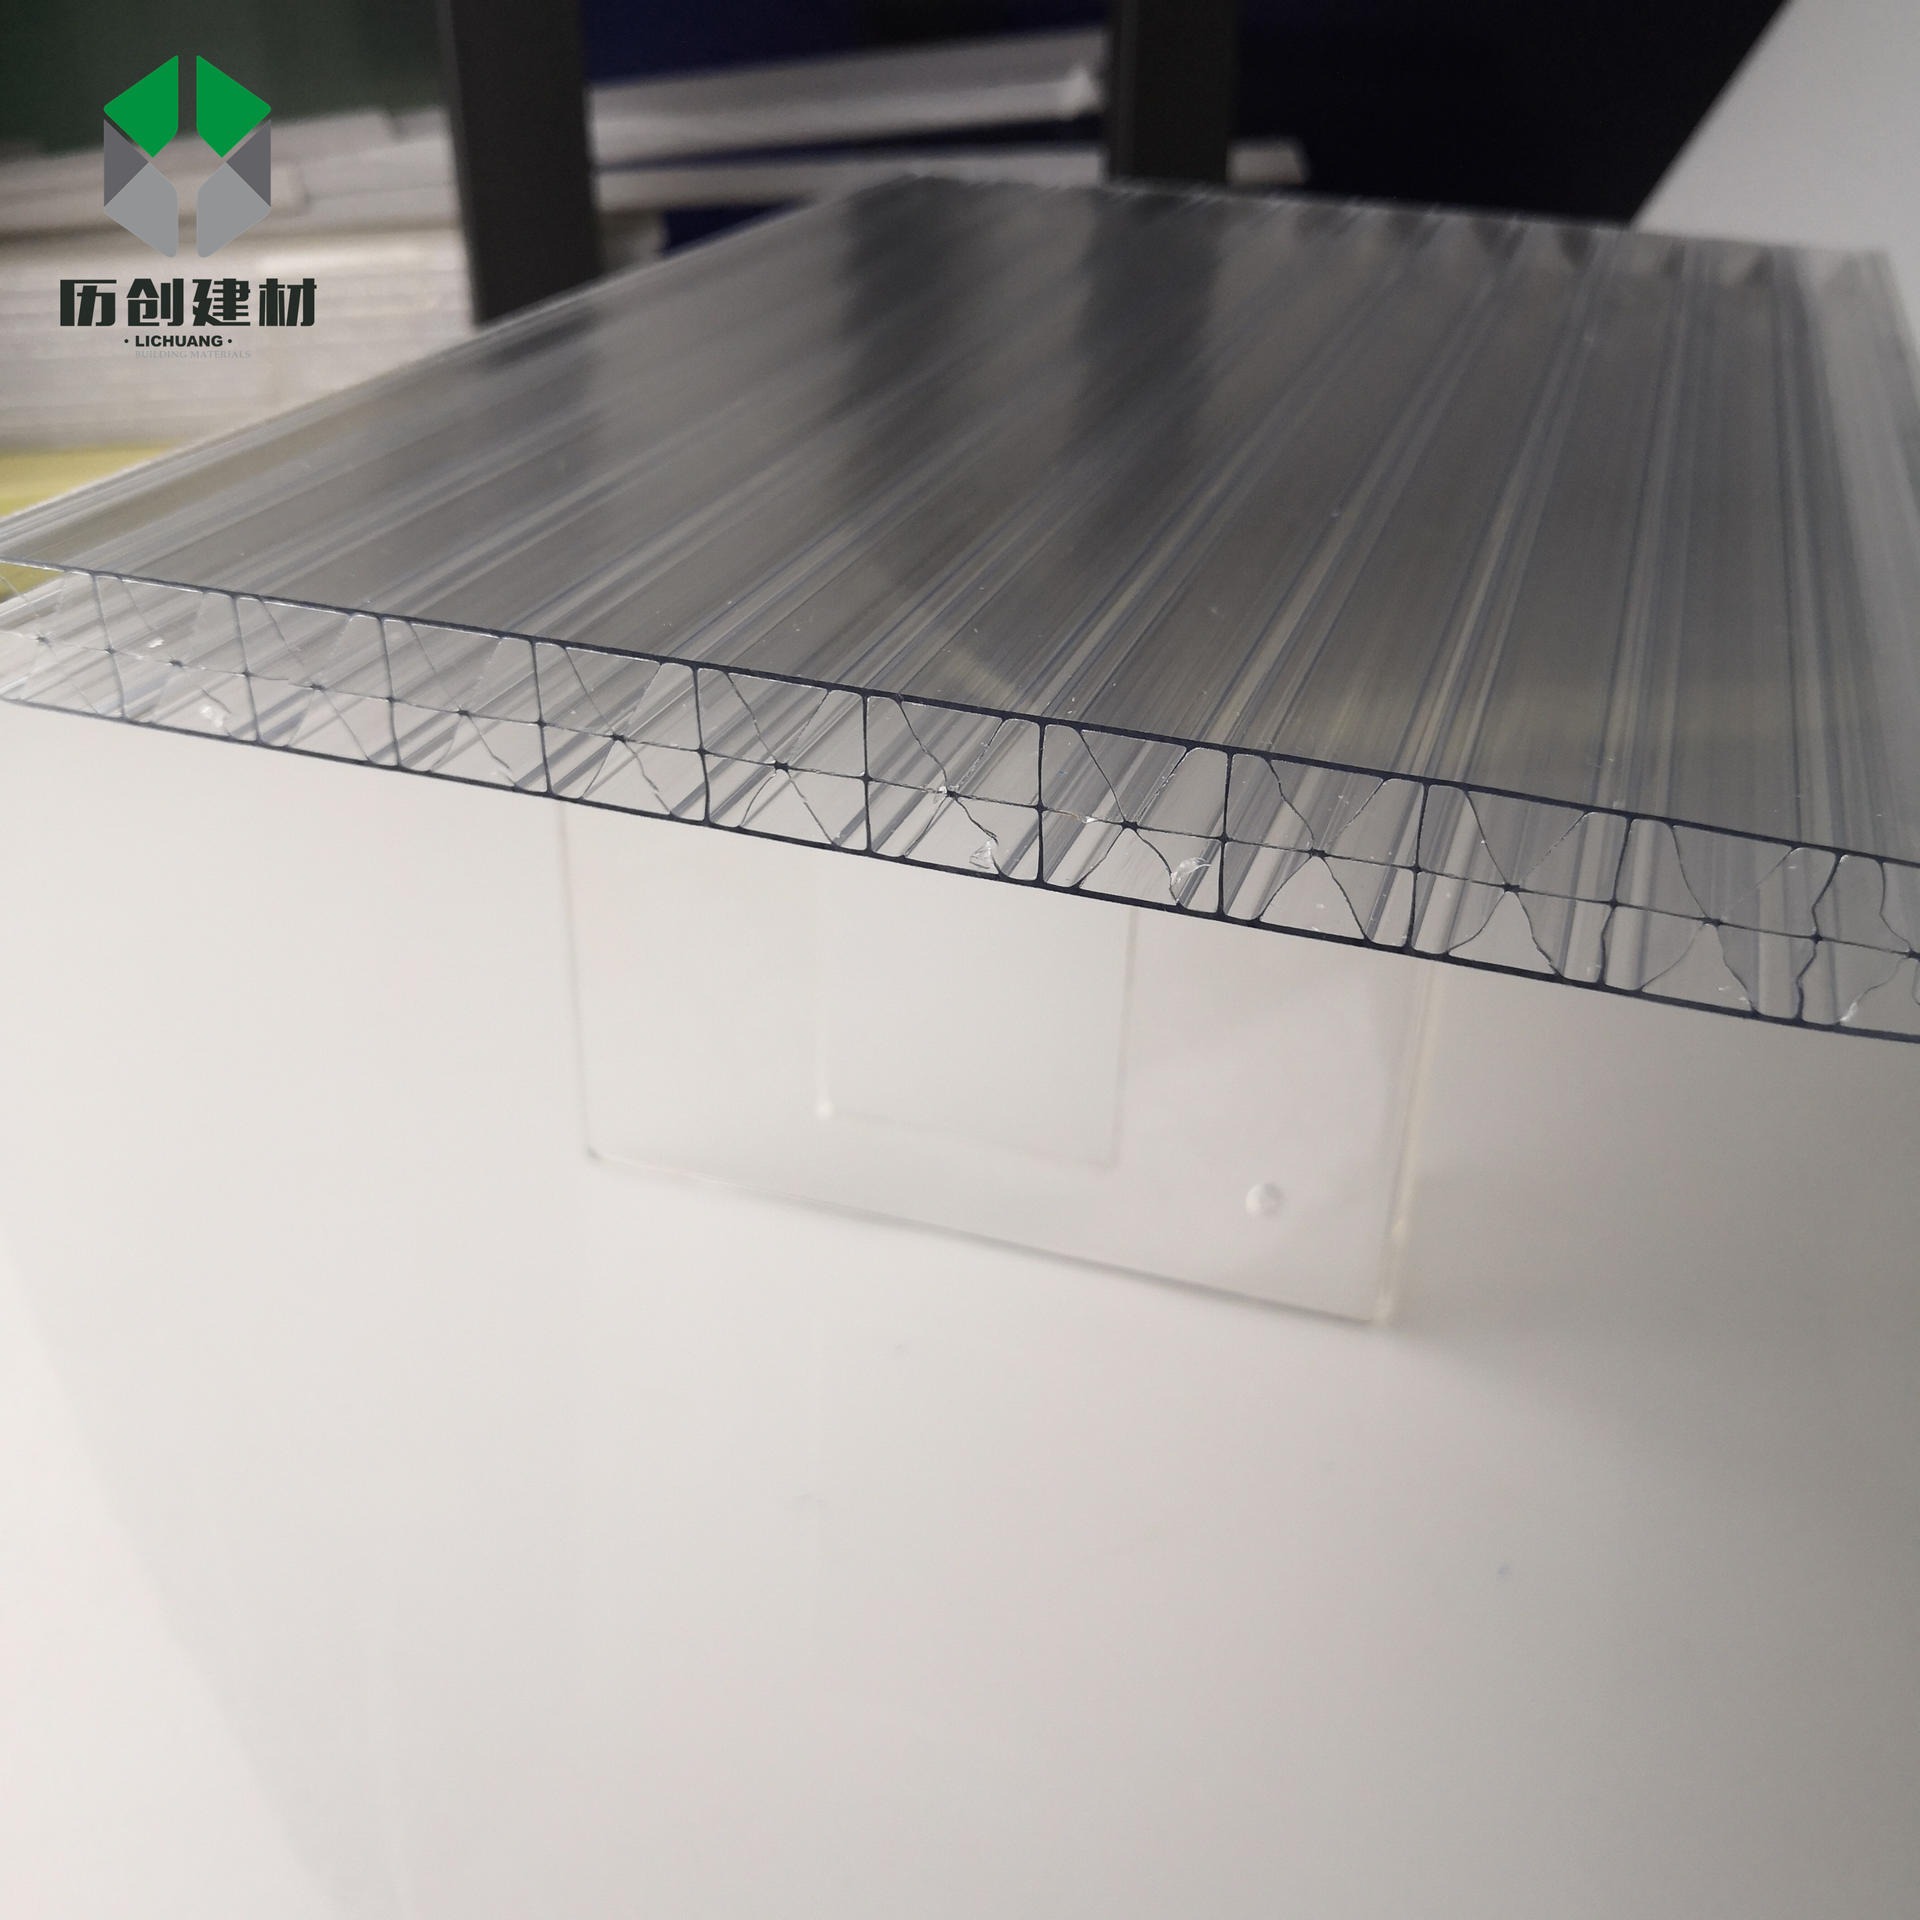 大棚透明阳光板 PC四层米字格板16mm工程中空板聚碳酸酯采光阳光板历创定制